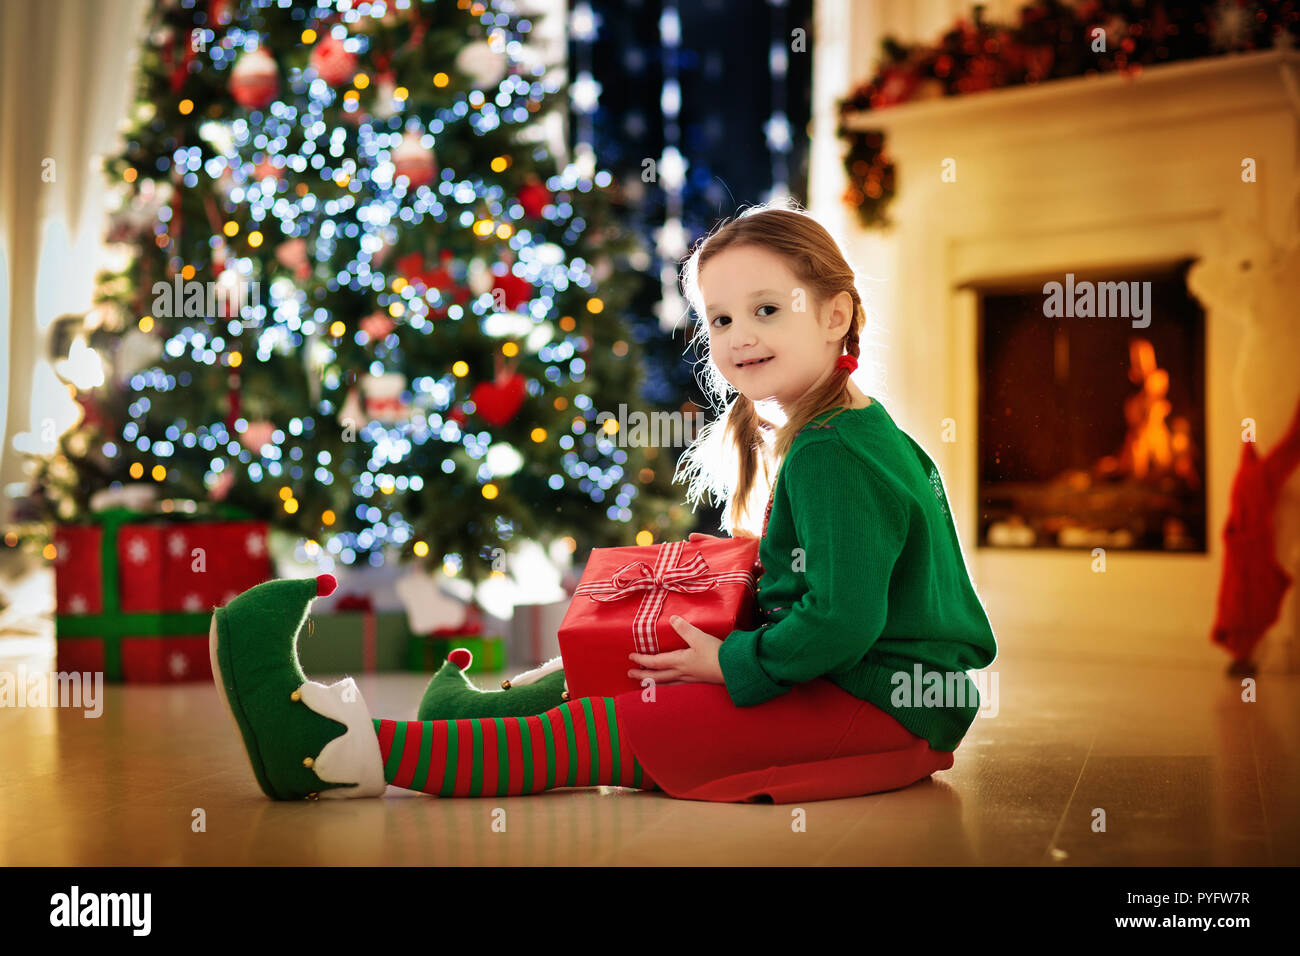 Apertura Regali Di Natale.Bambino Apertura Presente All Albero Di Natale A Casa Capretto In Elf Costume Con I Regali